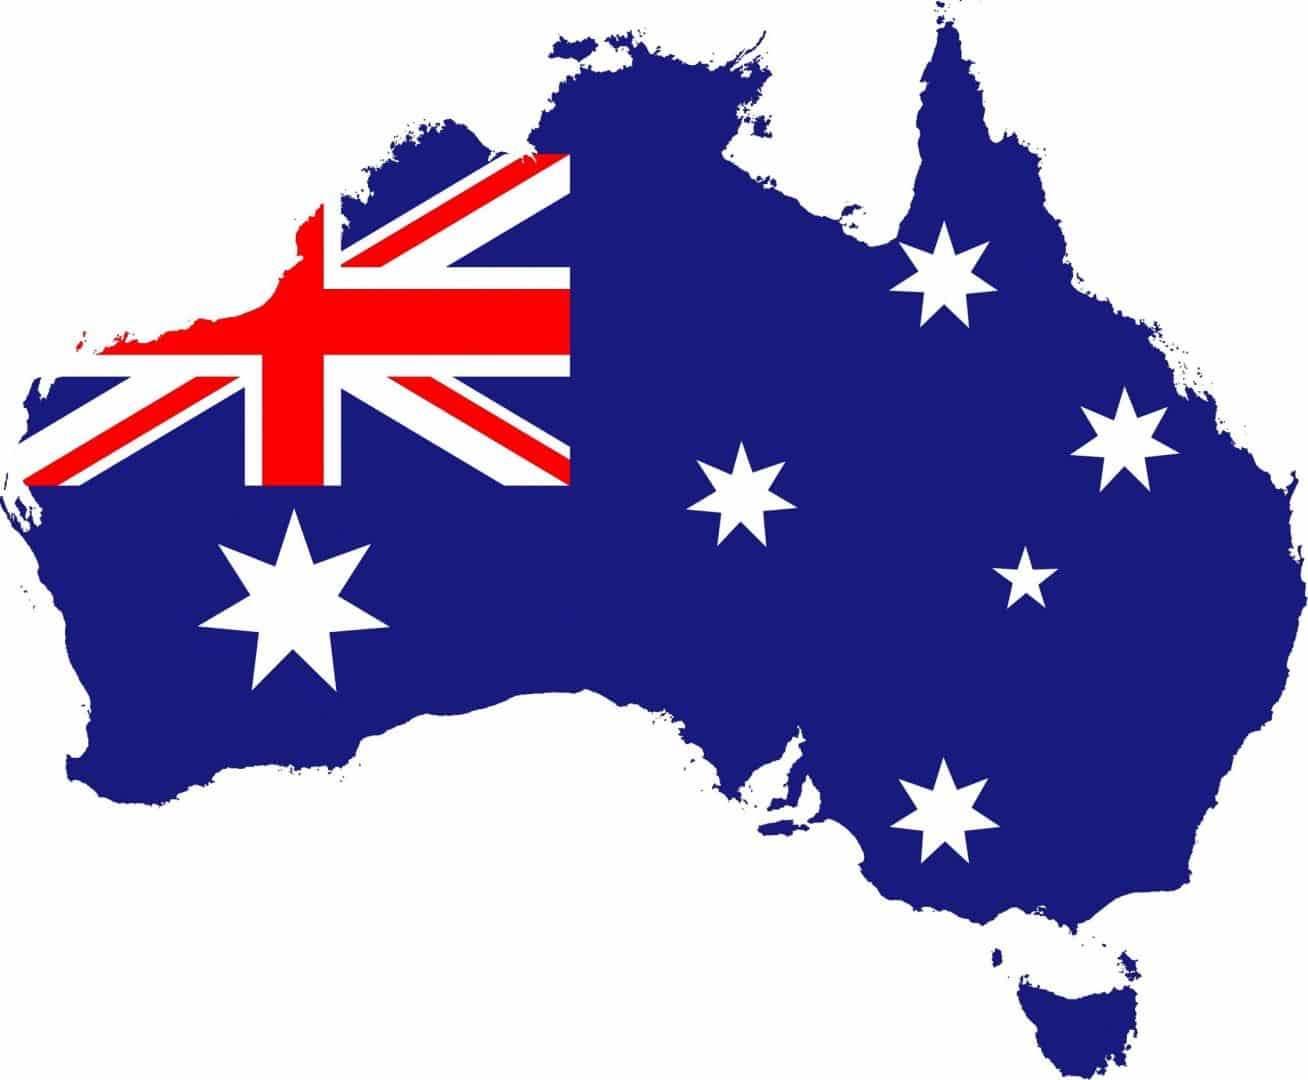 Descubra agora toda a história da bandeira da Austrália